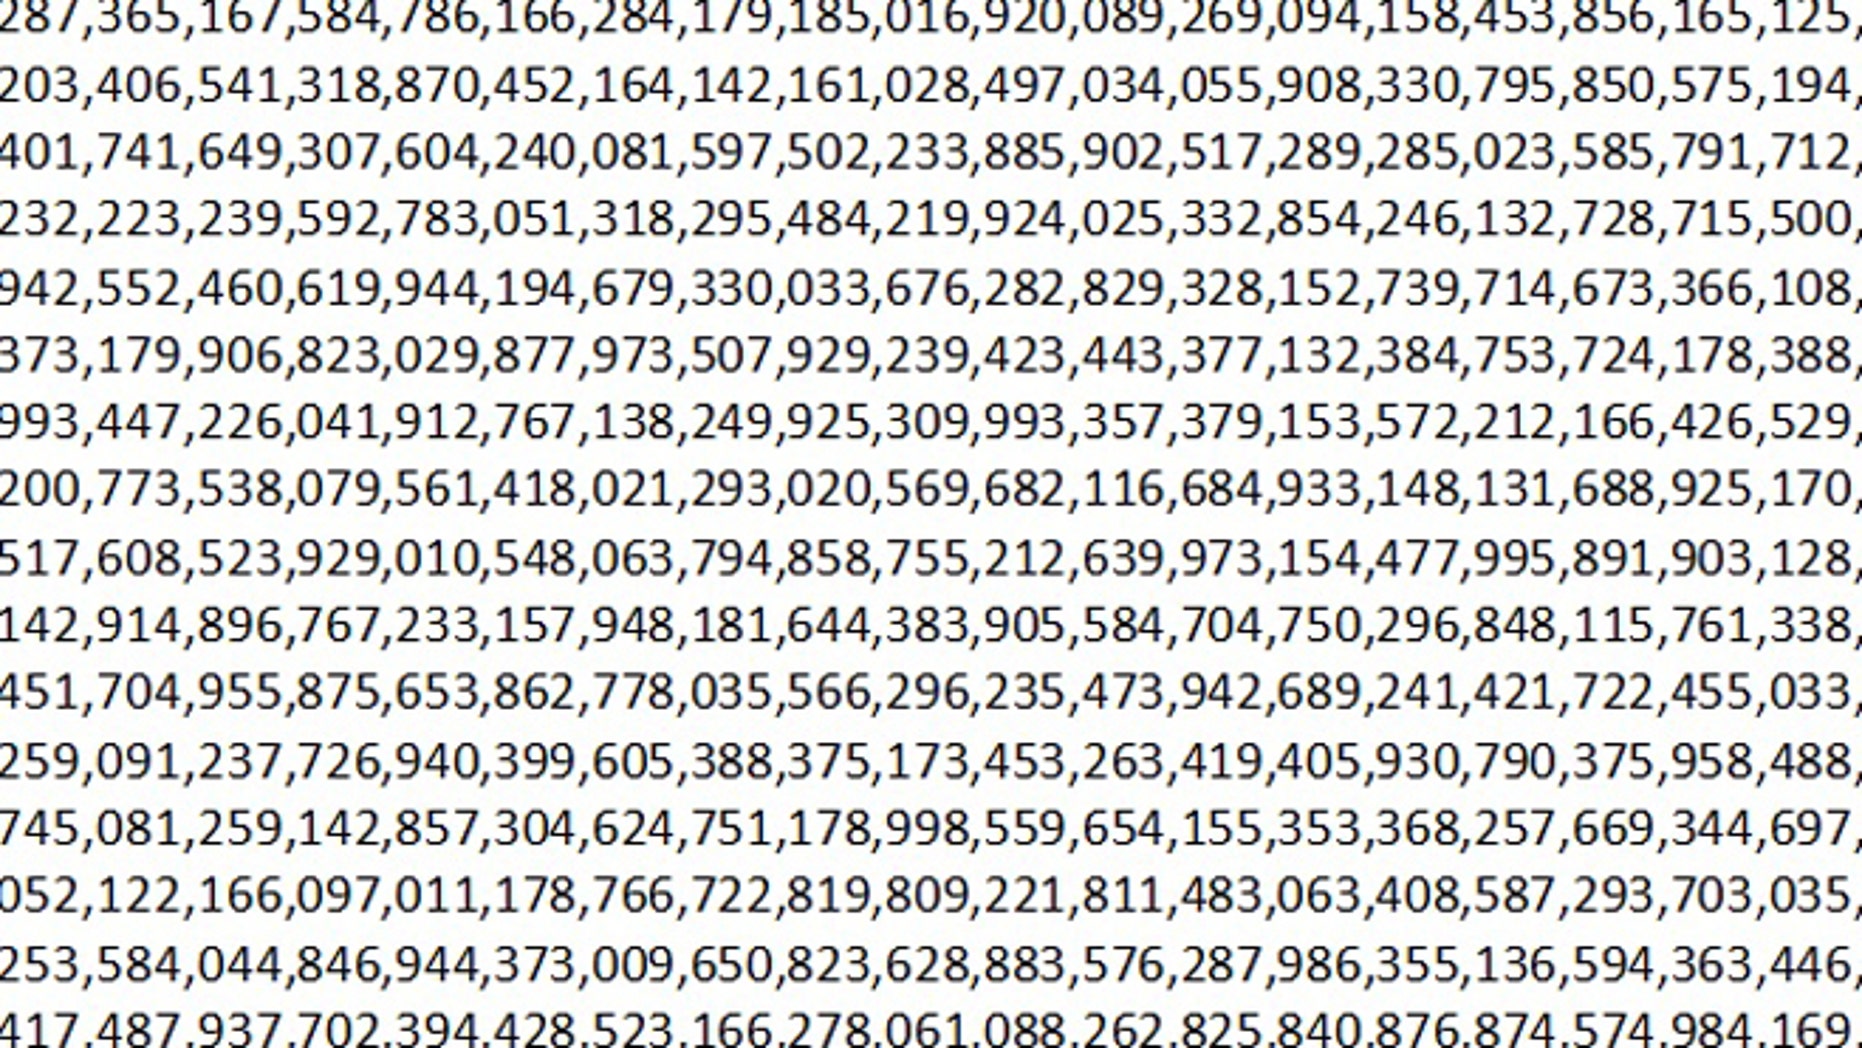 Числа после гугла. Самые большие числа в мире таблица. Самые большие цифры. Самая большая цифра. Самое большое число в мире.